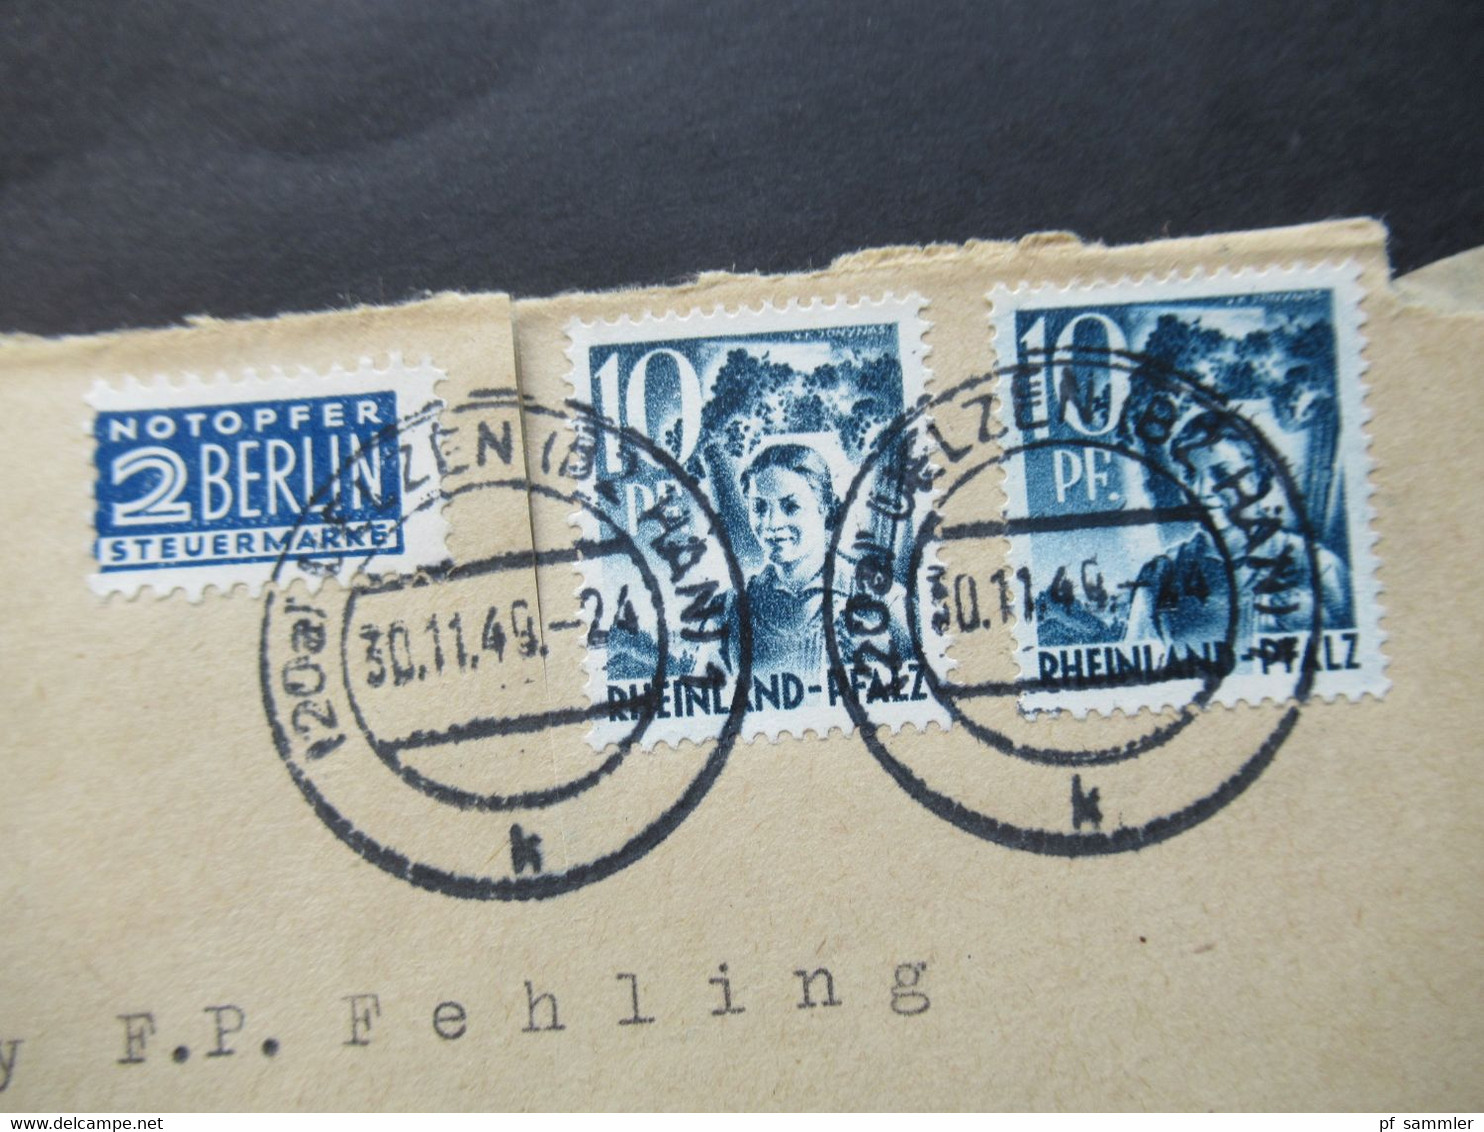 Französische Zone Rheinland Pfalz Nr.3 MeF  30.11.1949 Mit Notopfer Marke Umschlag Saatgut Heinr. Gerke Uelzen Hannover - Renania-Palatinato